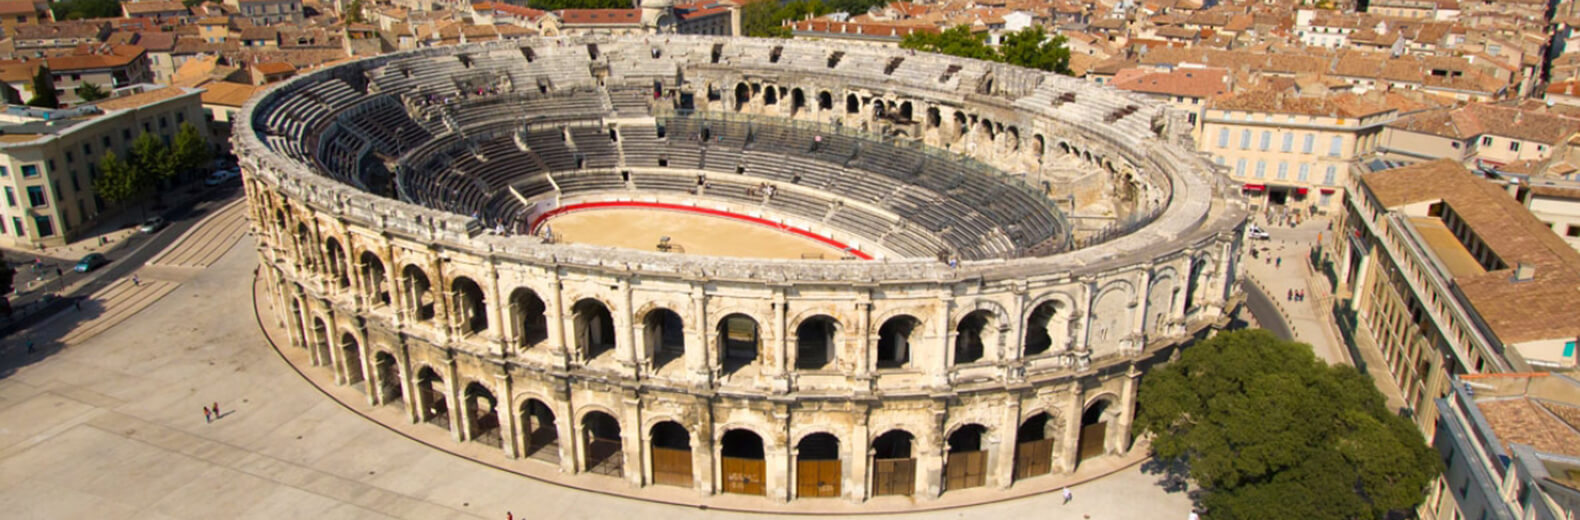 Les arène de Nîmes